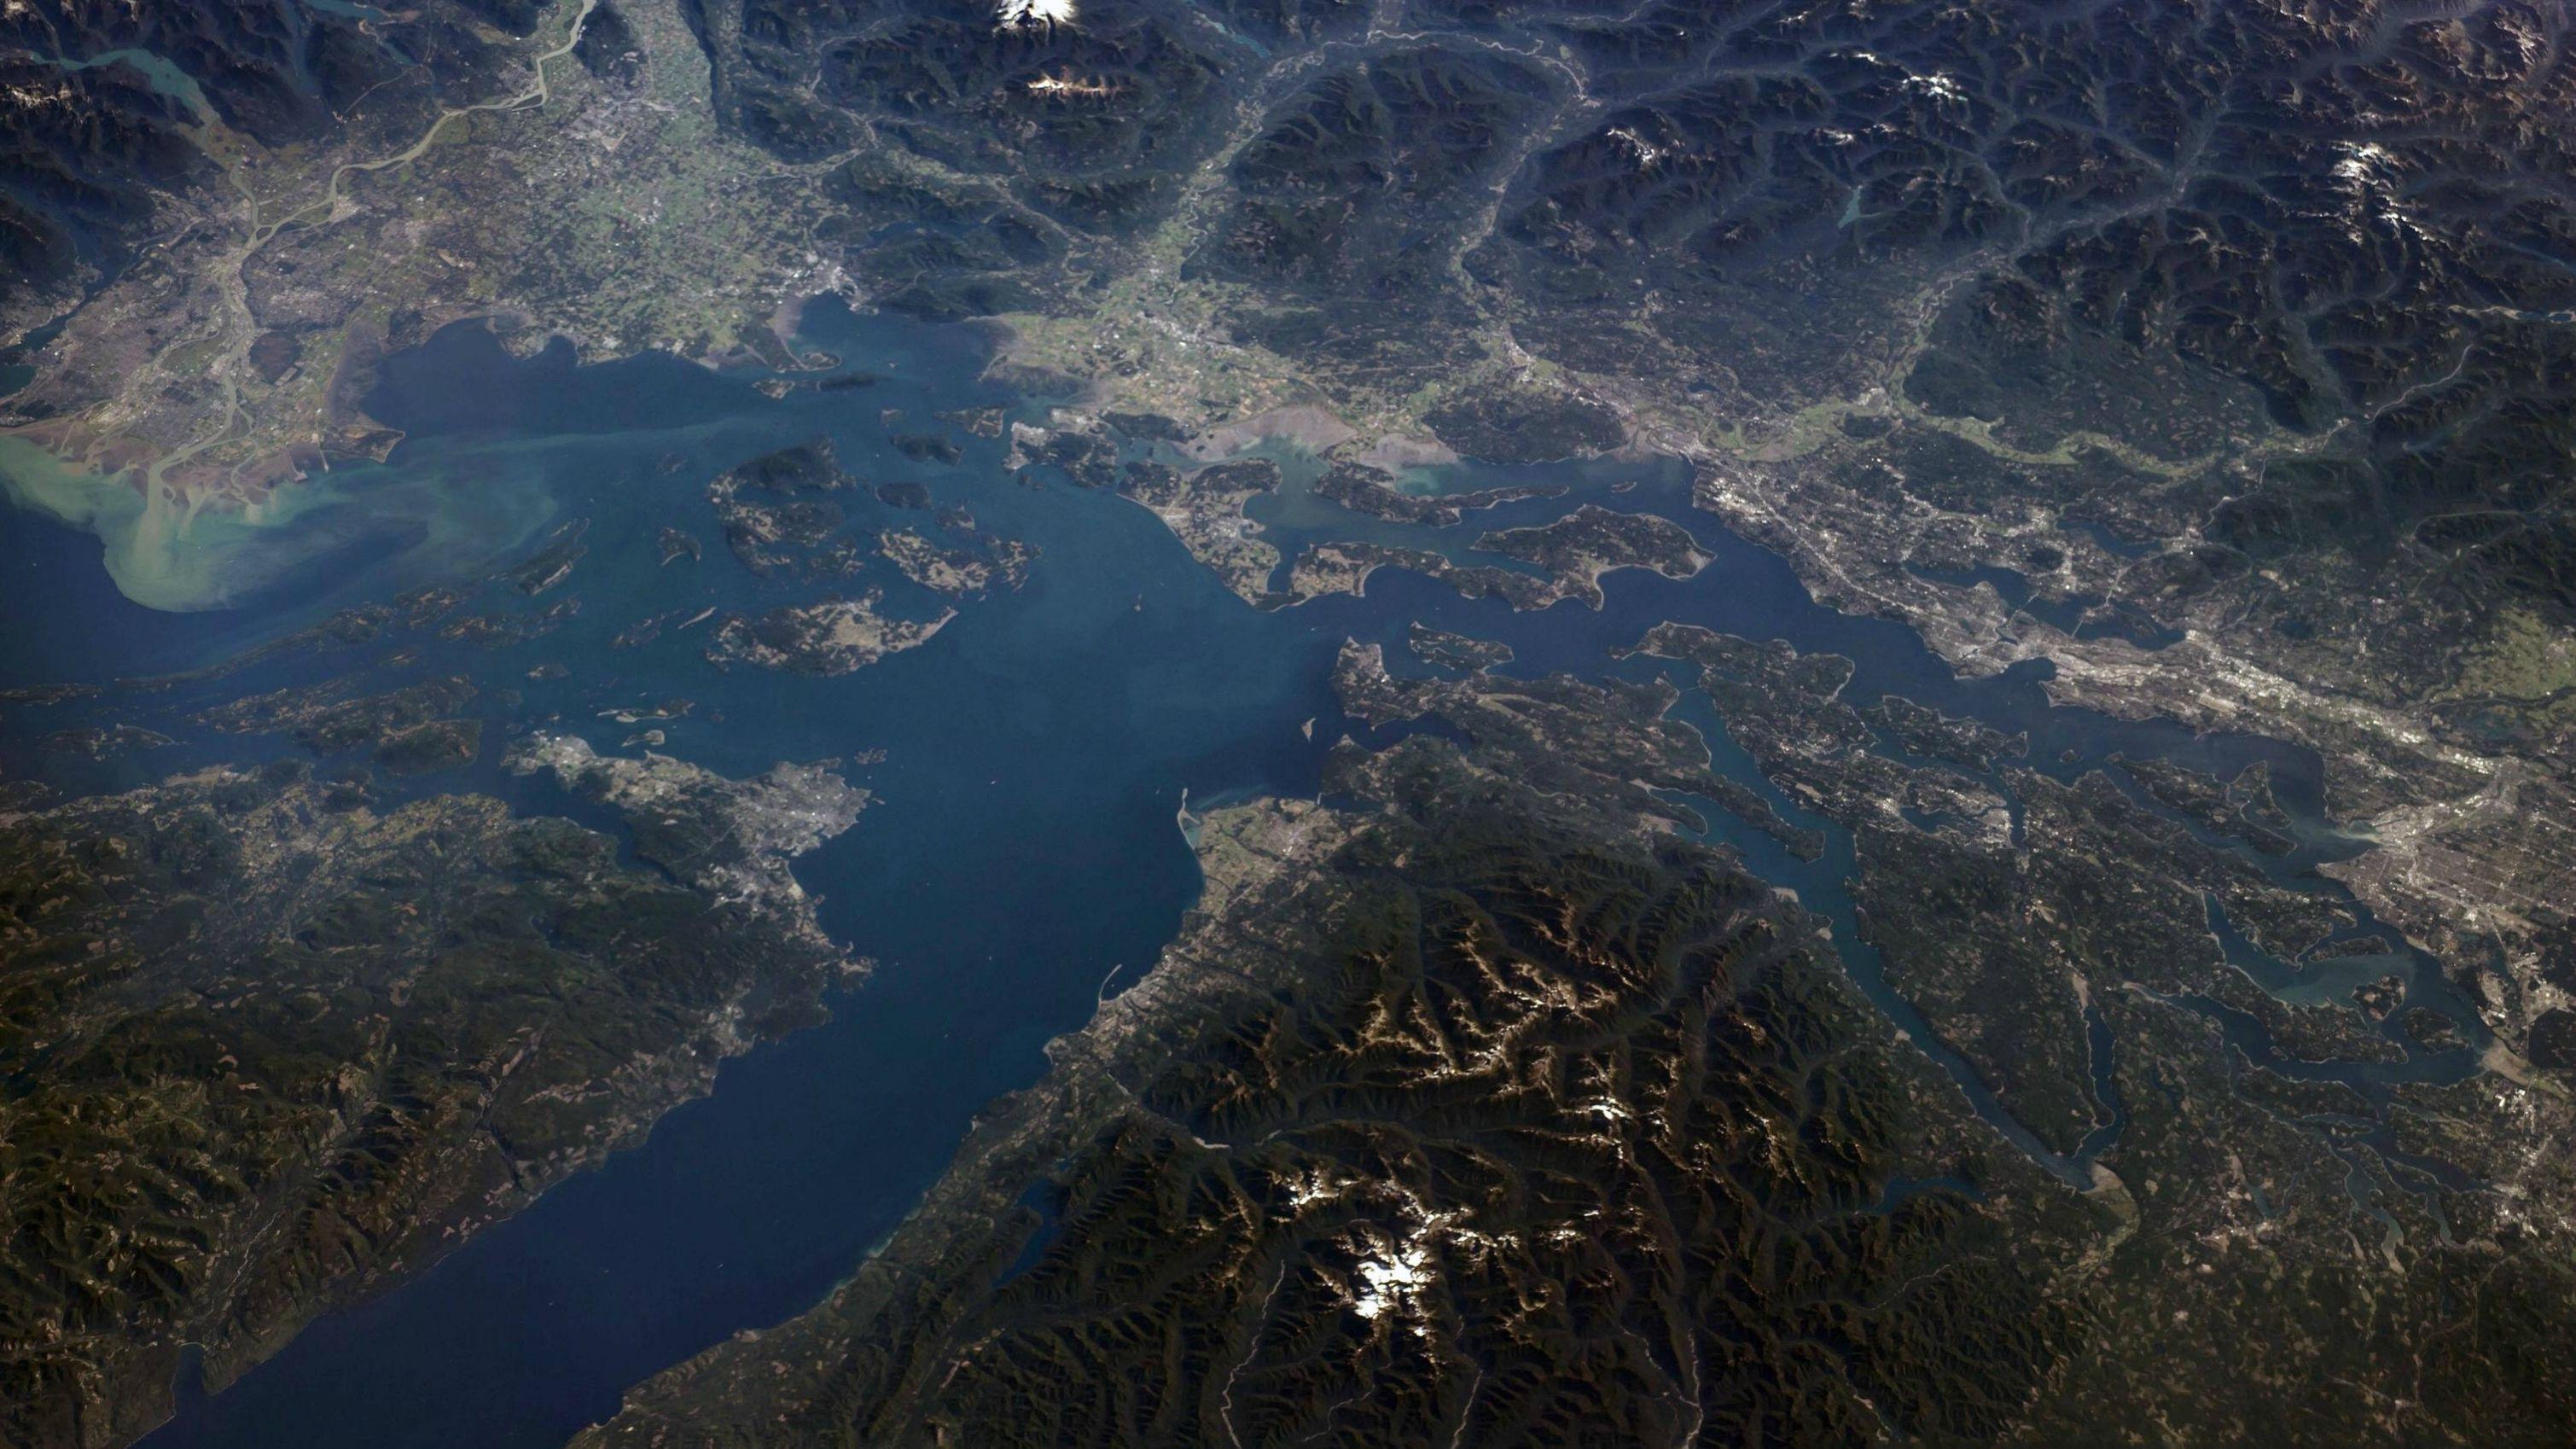 Снимки со спутника 2024 в реальном времени